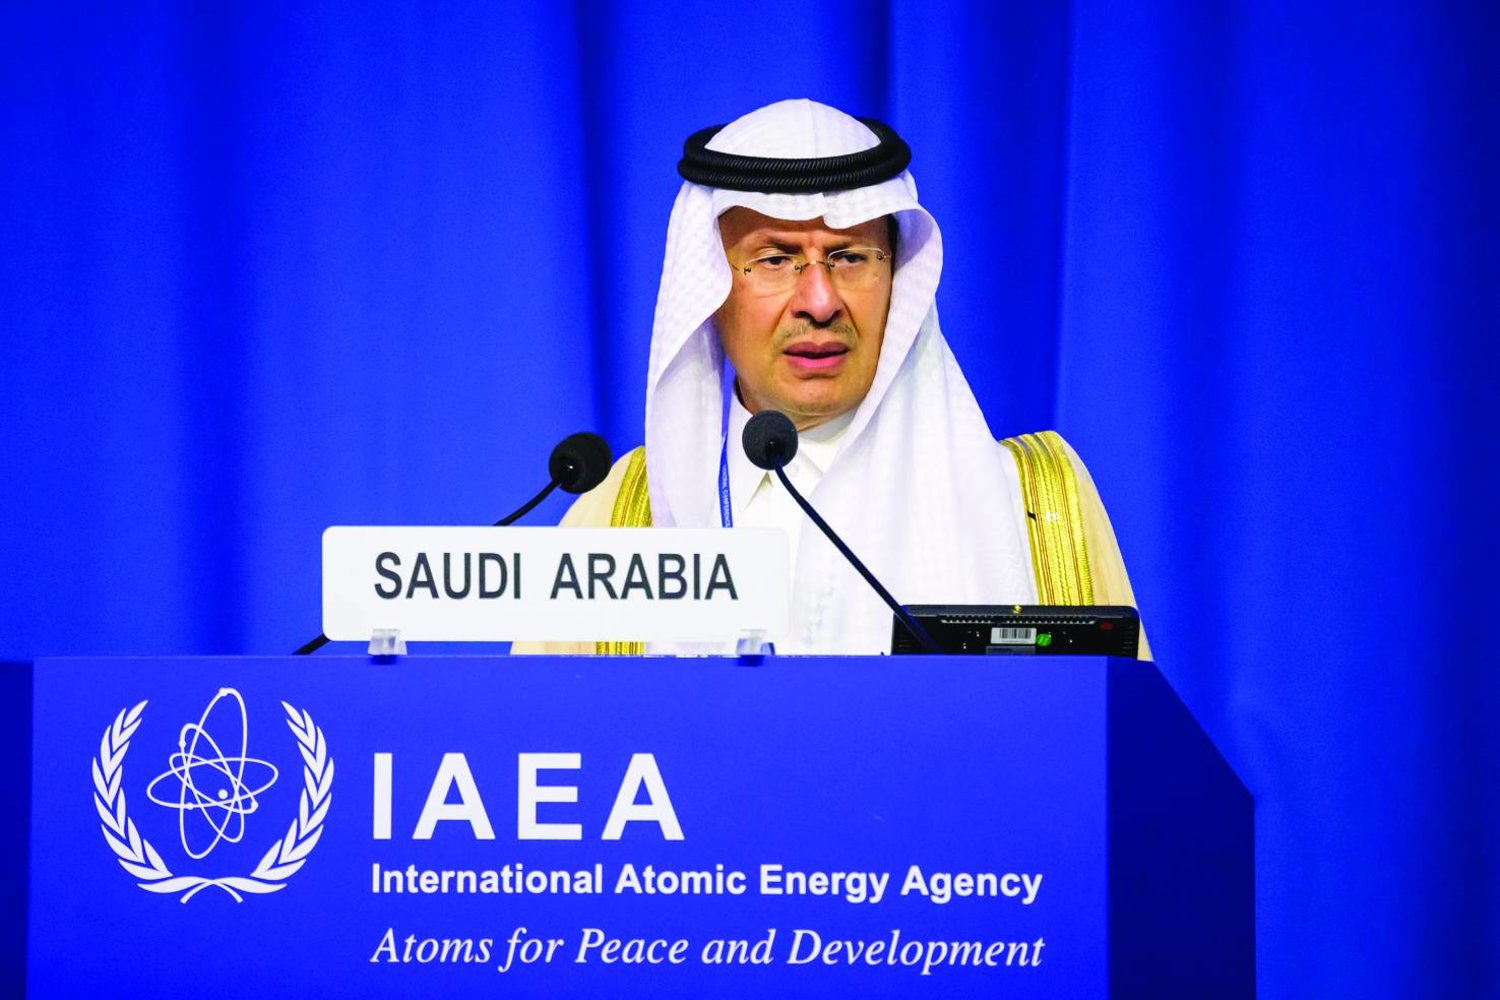 
وزير الطاقة السعودي خلال إلقائه كلمته في مؤتمر الوكالة الدولية للطاقة الذرية في فيينا أمس (إ.ب.أ)